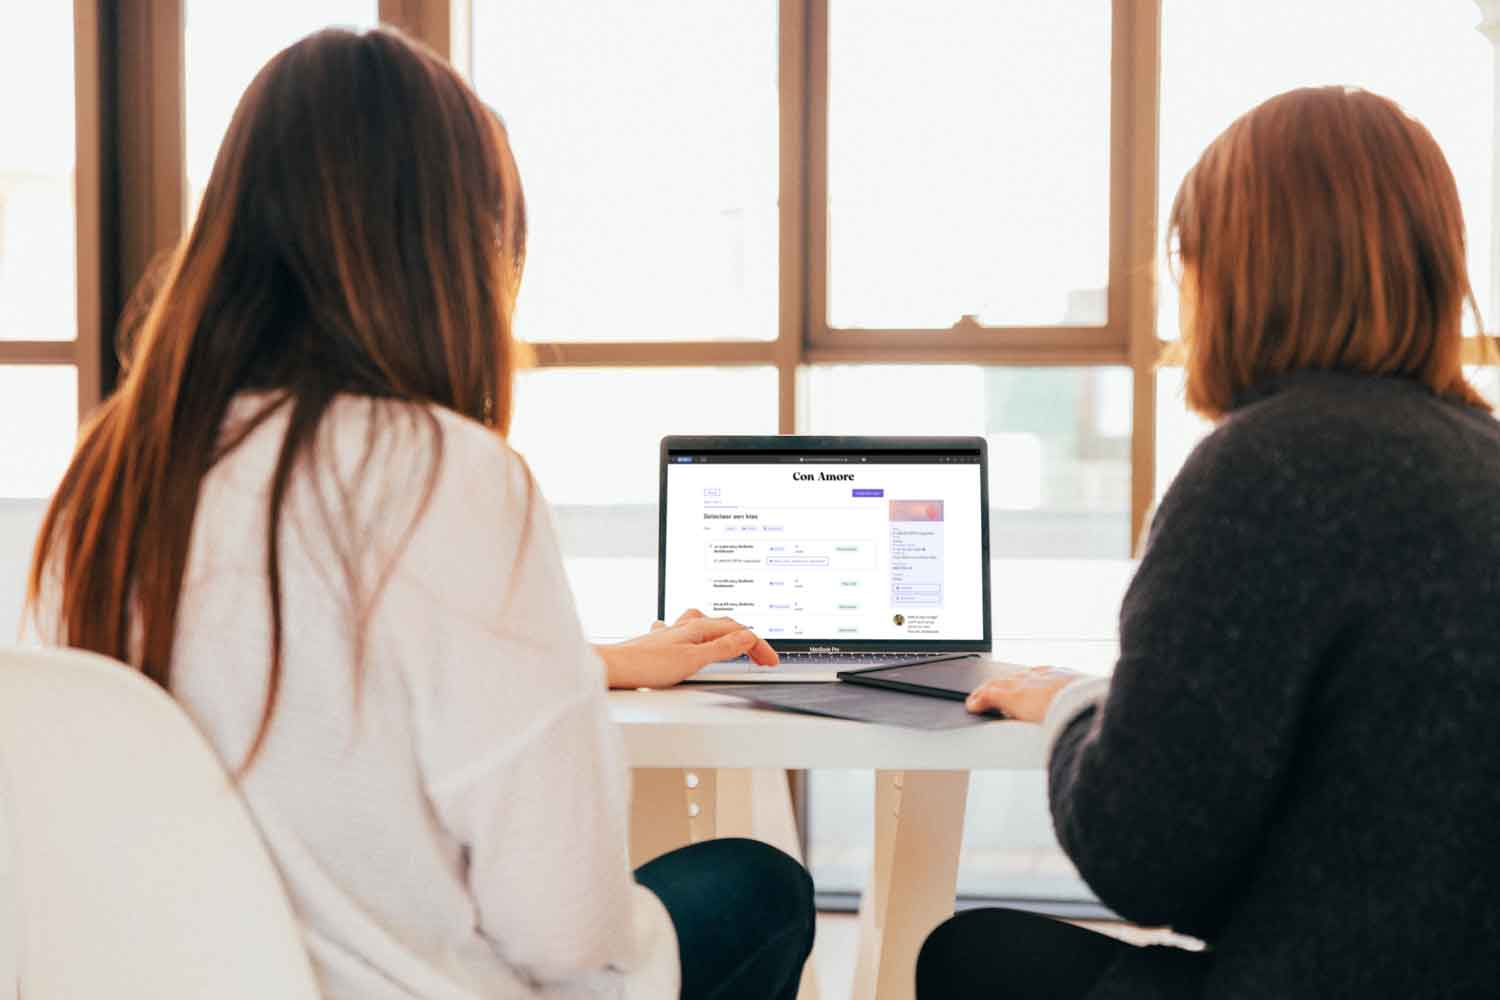 Twee vrouwen op een laptop die een website bekijken